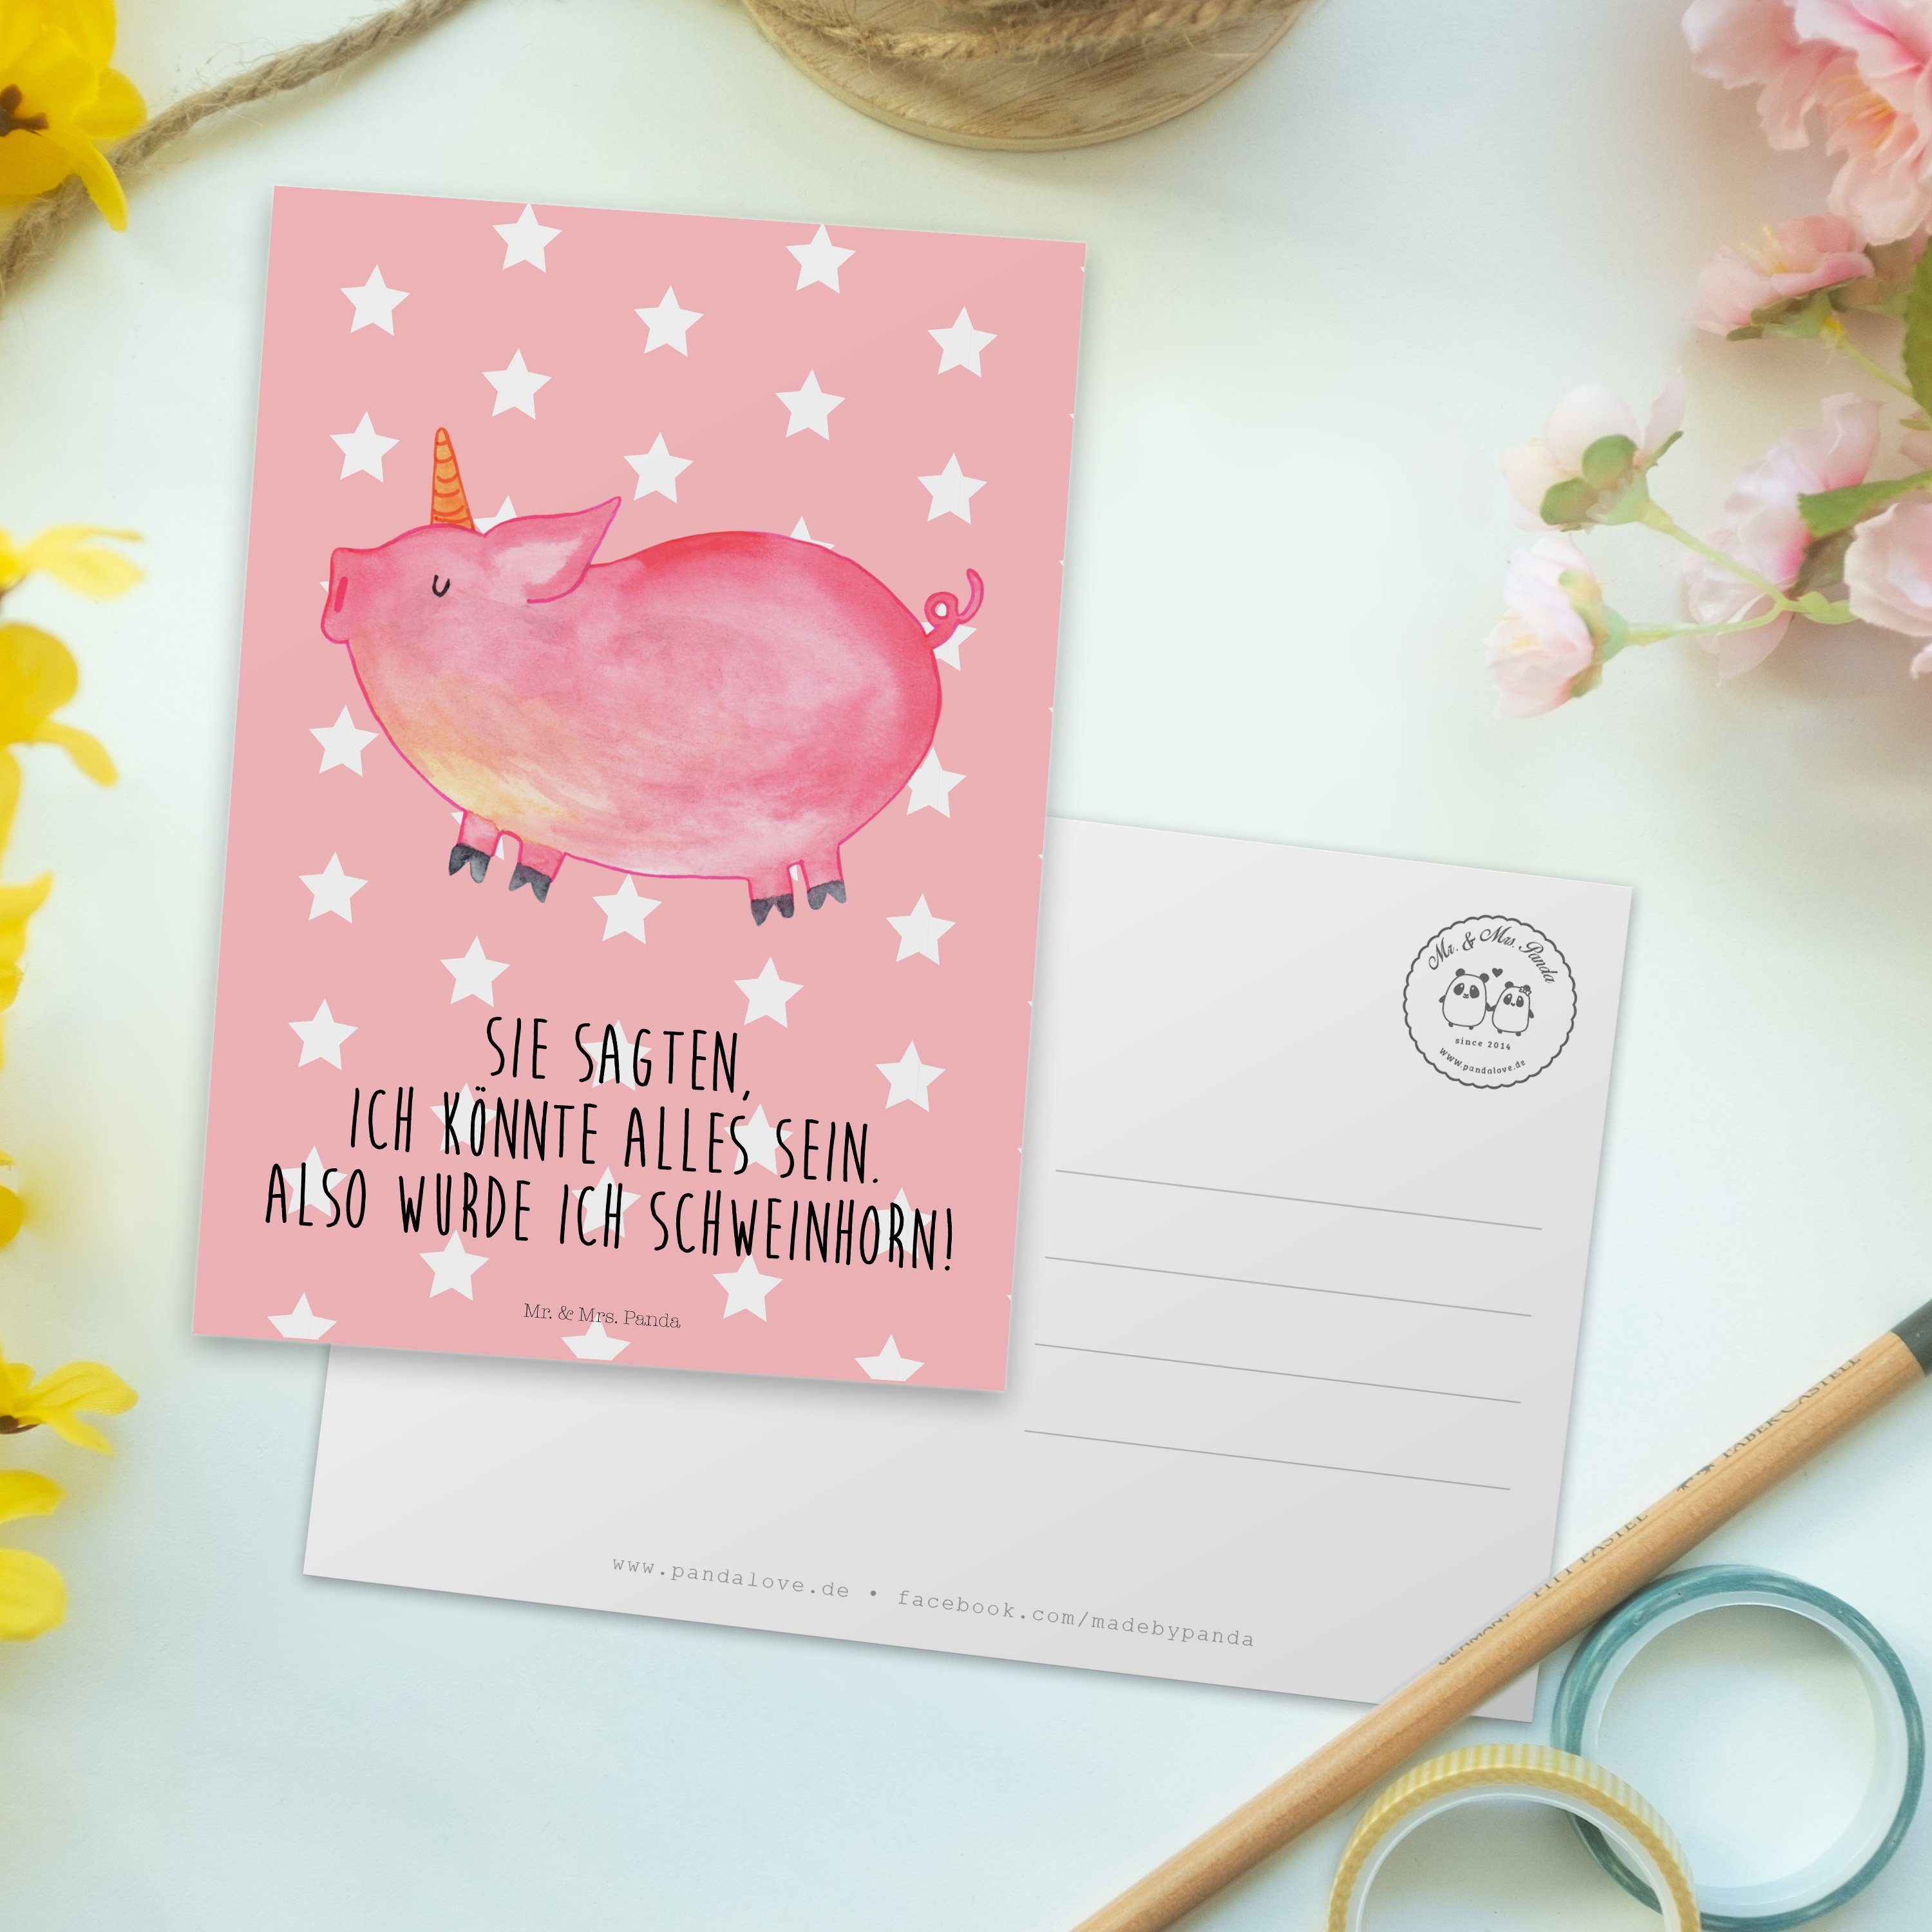 Pastell Panda Geschenk, Einhorn Grußk Geburtstagskarte, Schweinhorn - Mrs. - Rot & Postkarte Mr.